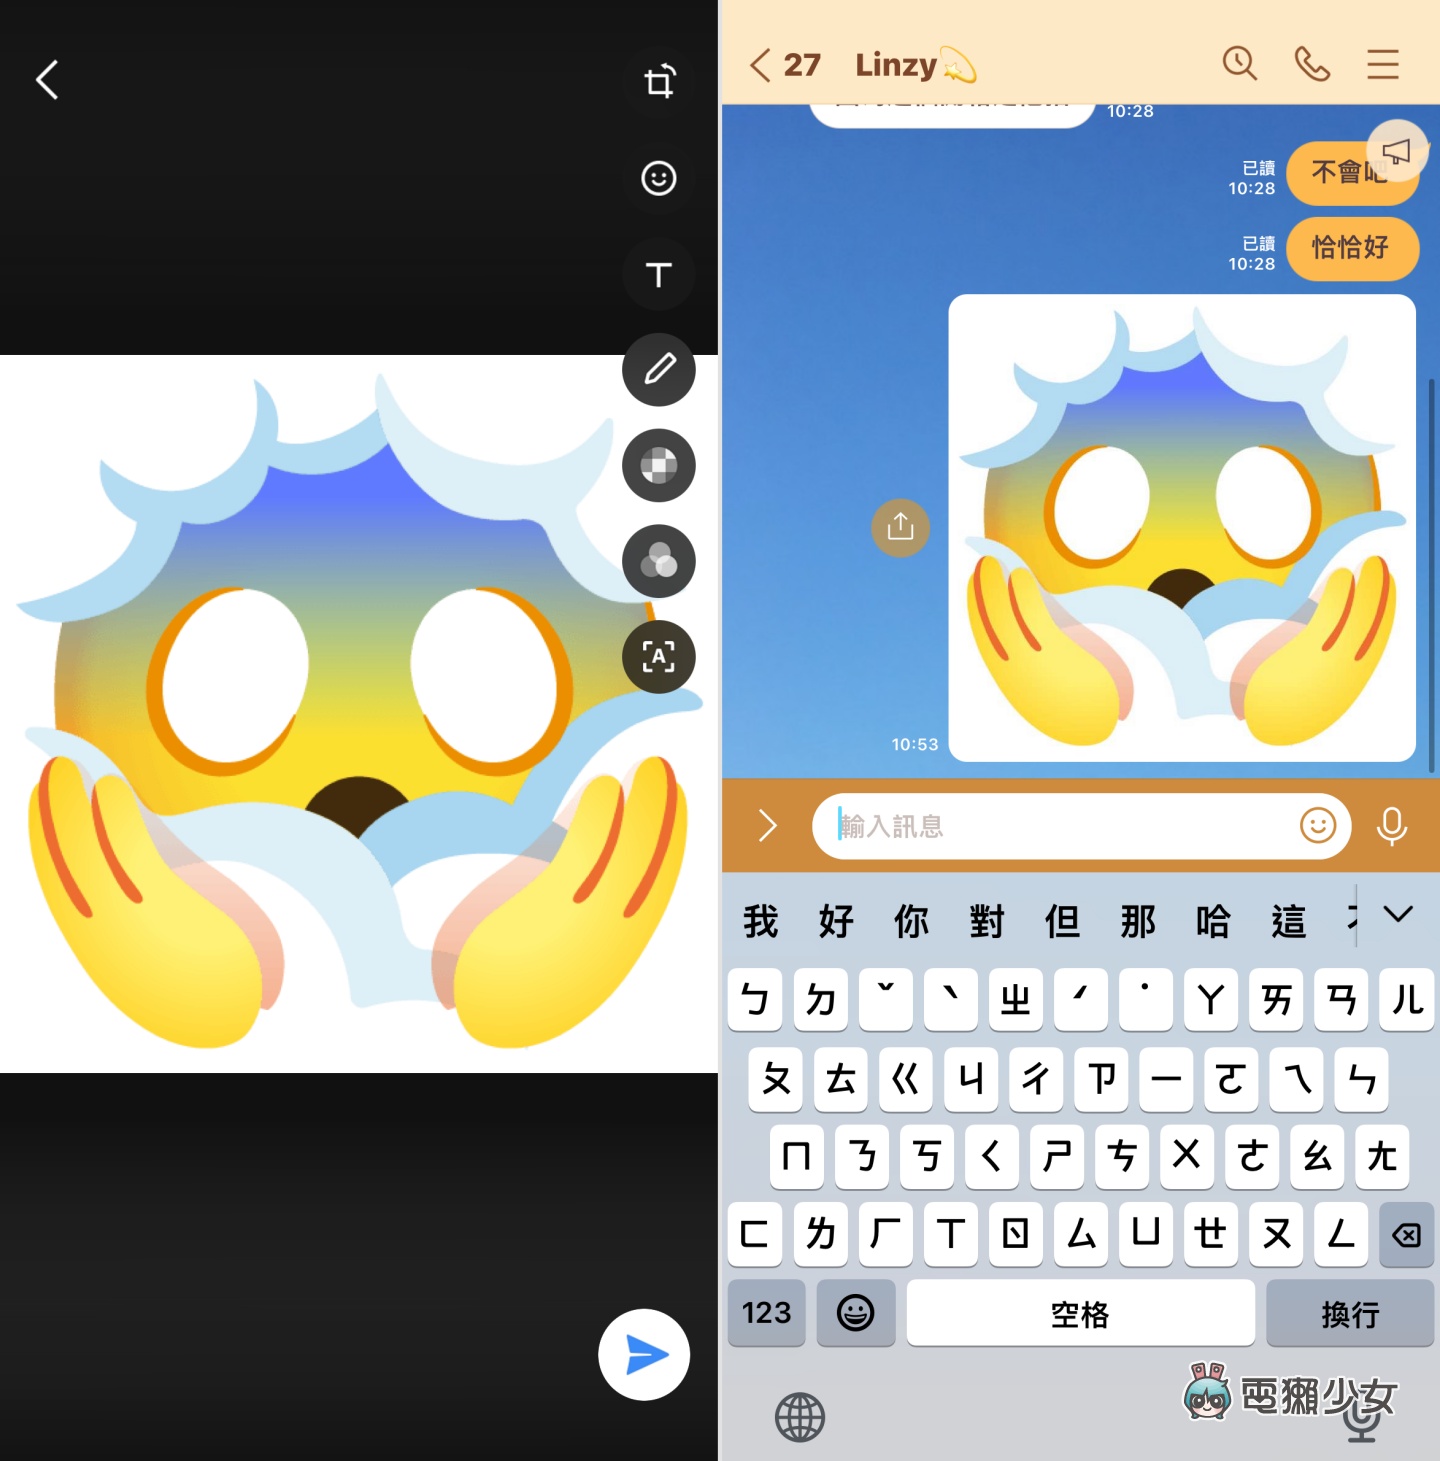 混出你的酷表情！Gboard Emoji Kitchen 推出網頁版，iPhone 用戶也玩得到啦